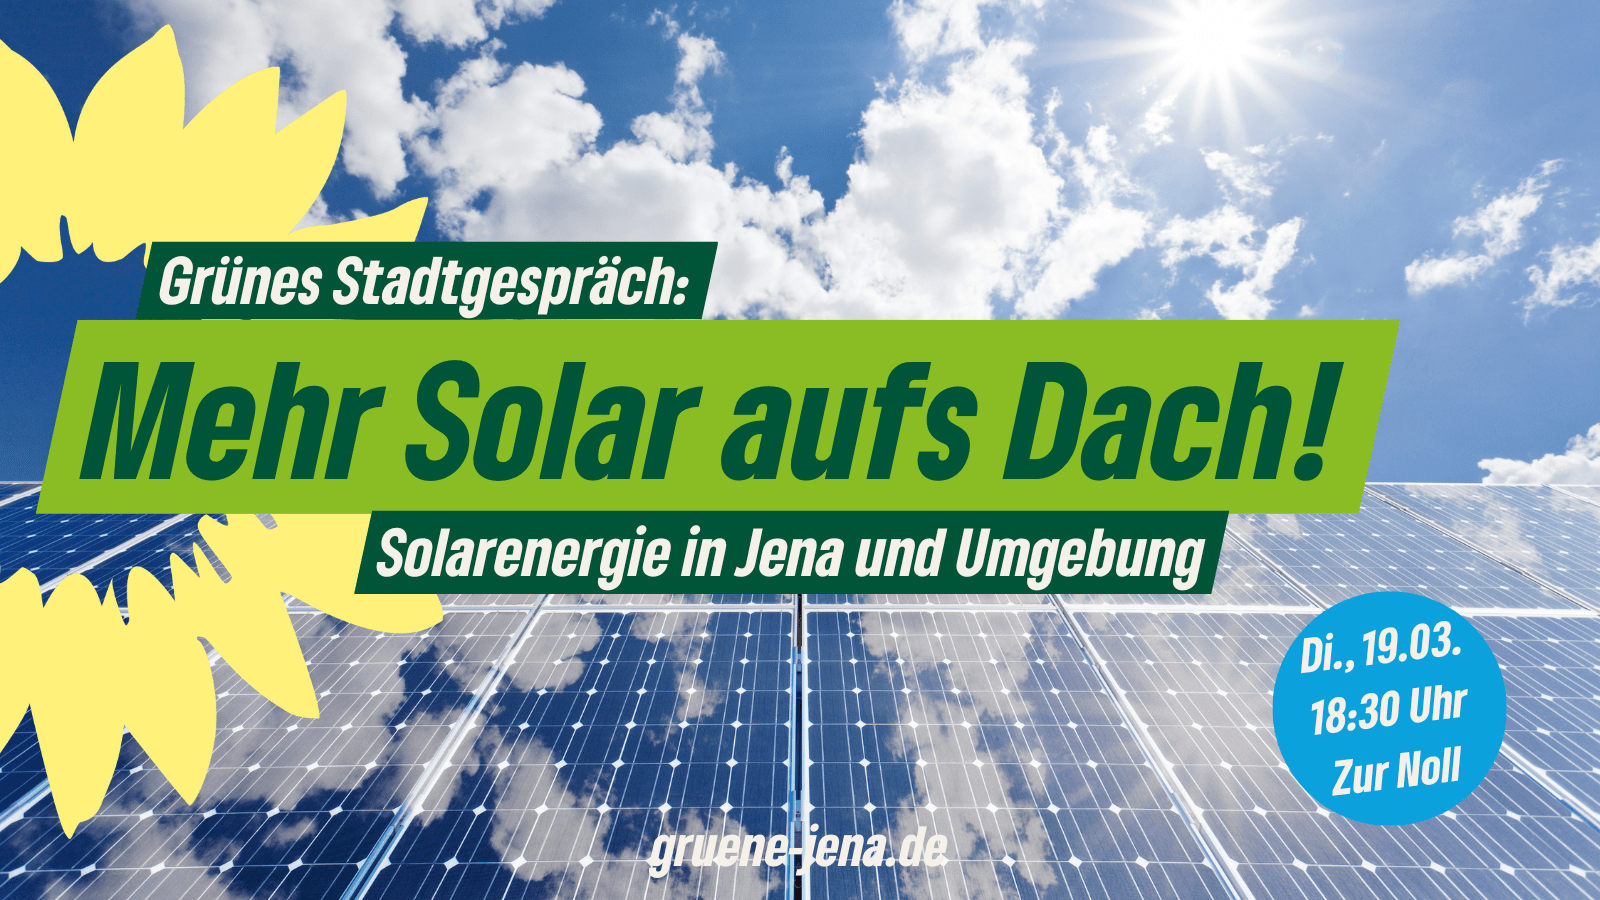 Blick auf Solarpanels von unten, im Hintergrund Wolken und Himmel. Text: Grünes Stadtgespräch: Mehr Solar aufs Dach! Solarenergie in Jena und Umgebung. Di., 18:30 Uhr, Zur Noll